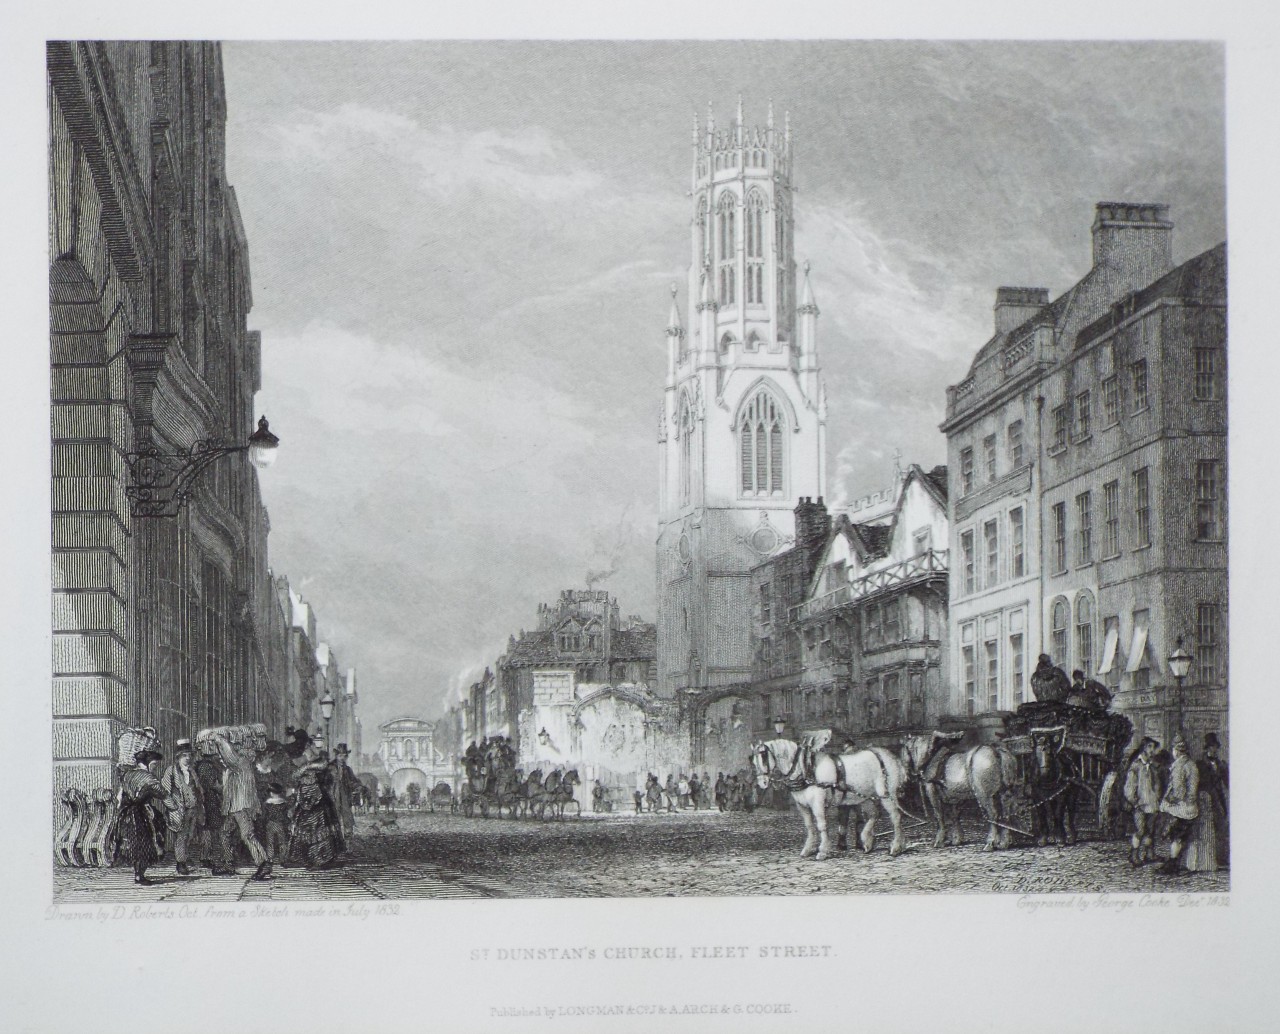 Print - St. Dunstan's Church, Fleet Street. - Cooke